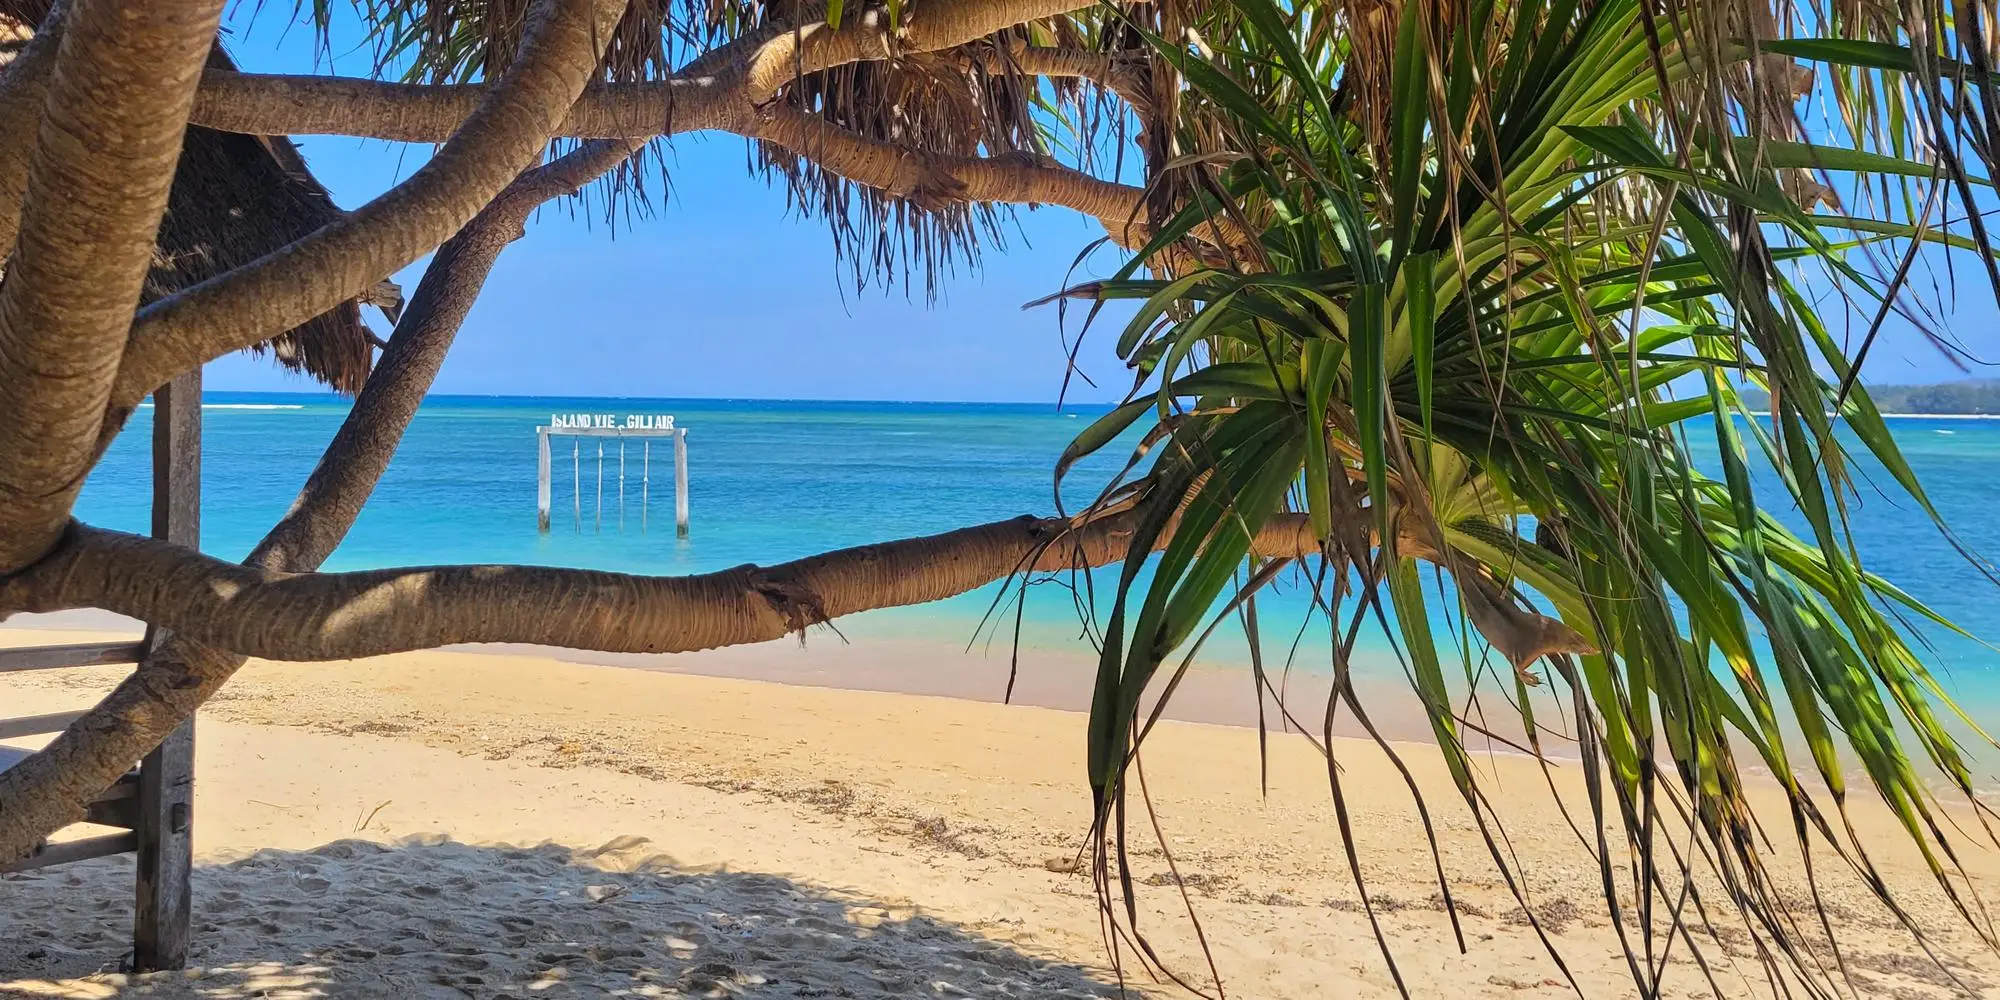 Isole Gili quale scegliere? Spiaggia di sabbia bianca con palma e altalena sul mare dell'isola Gili in indonesia - the best gili island to visit